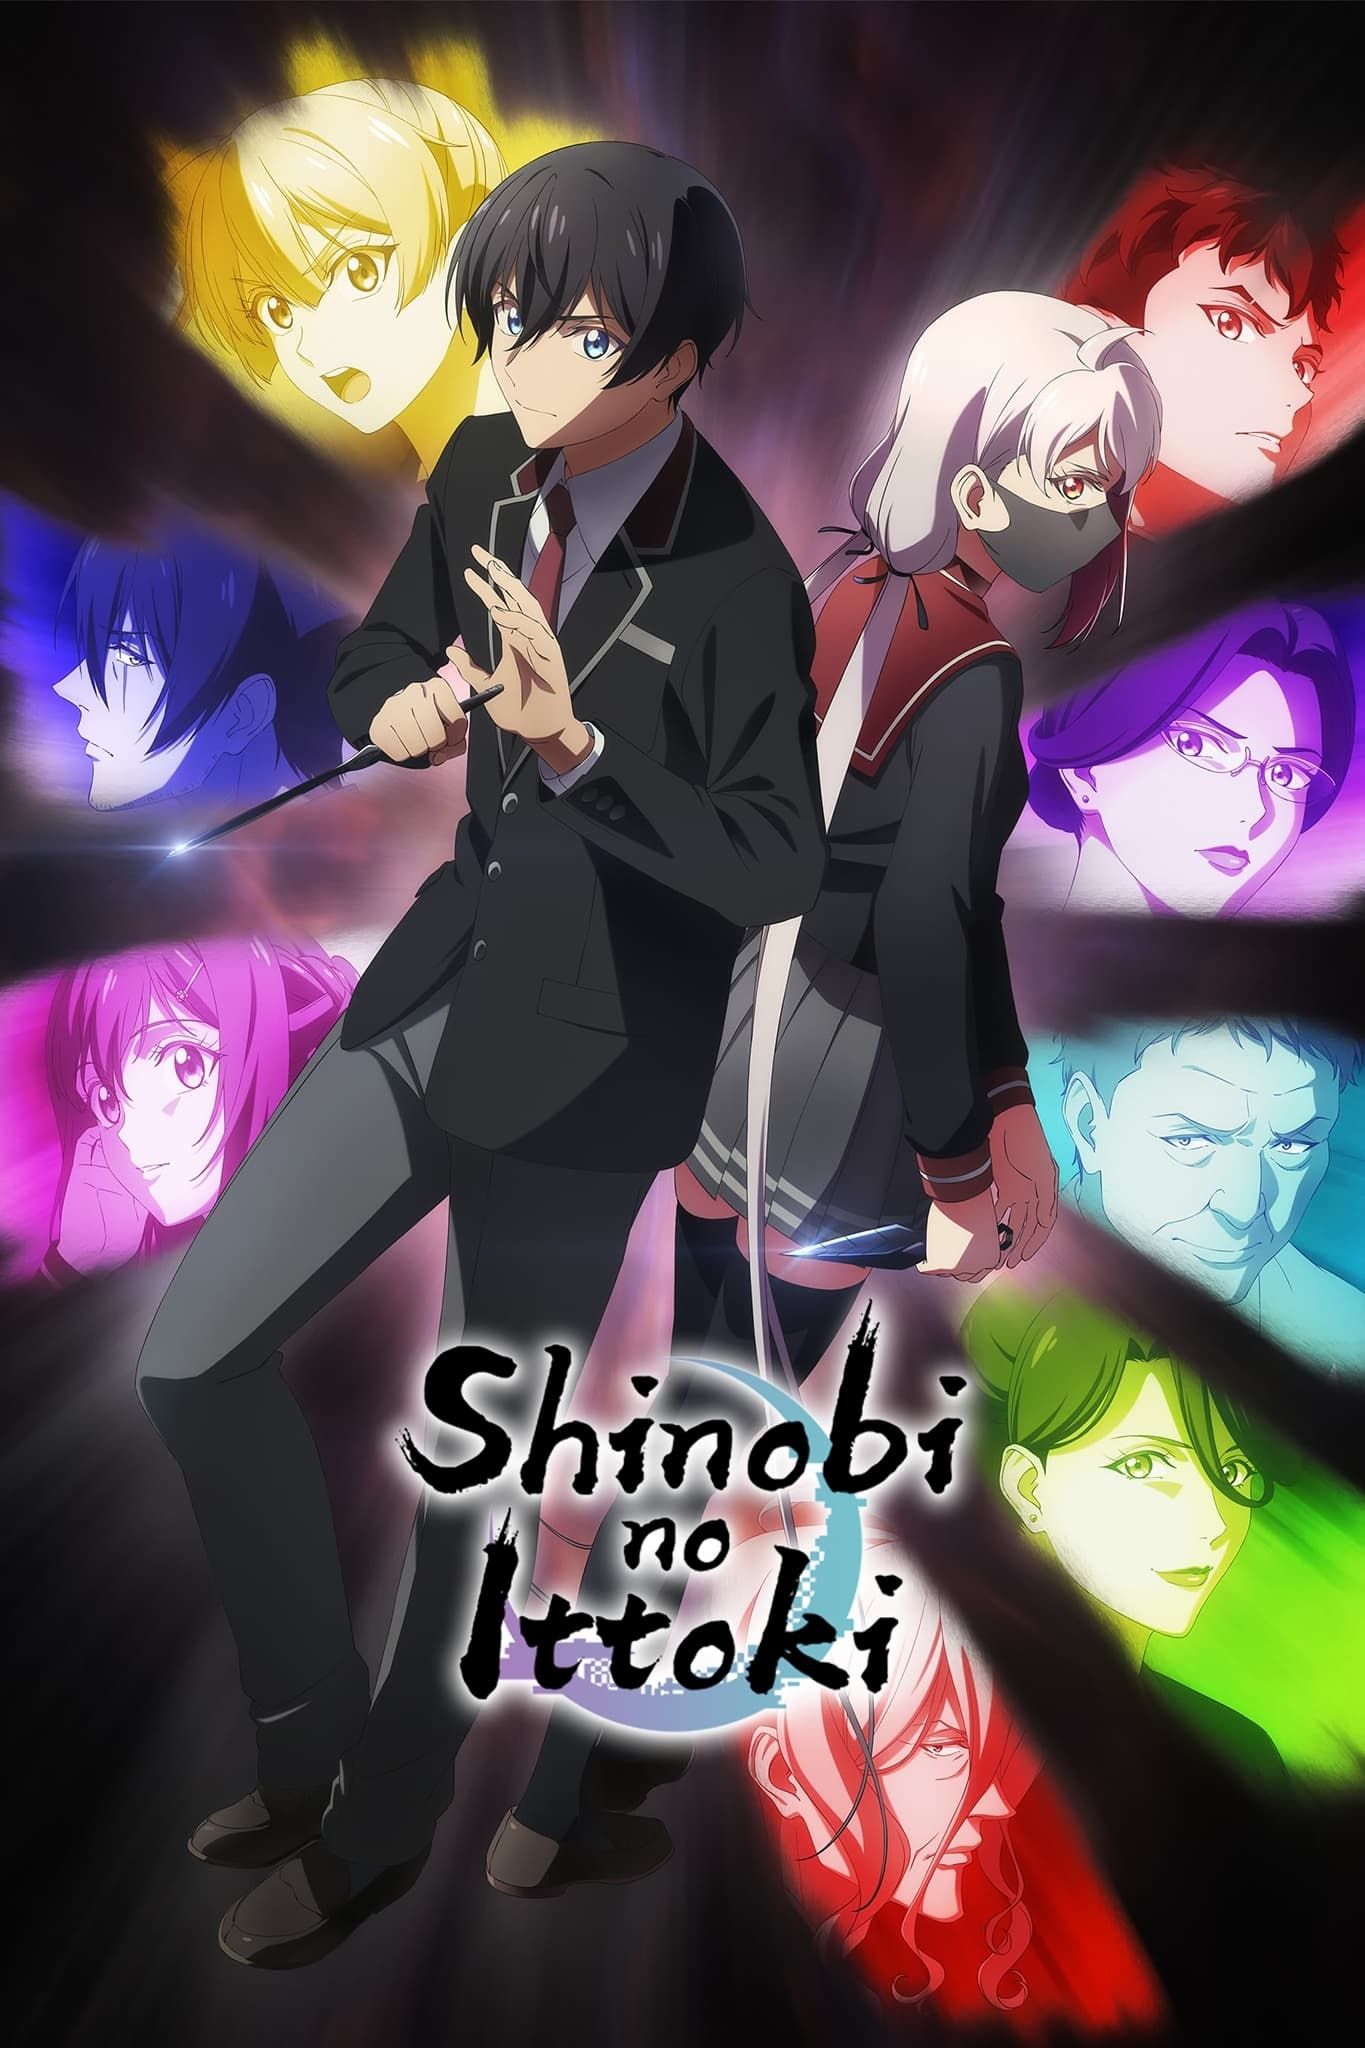 Shinobi no Ittoki